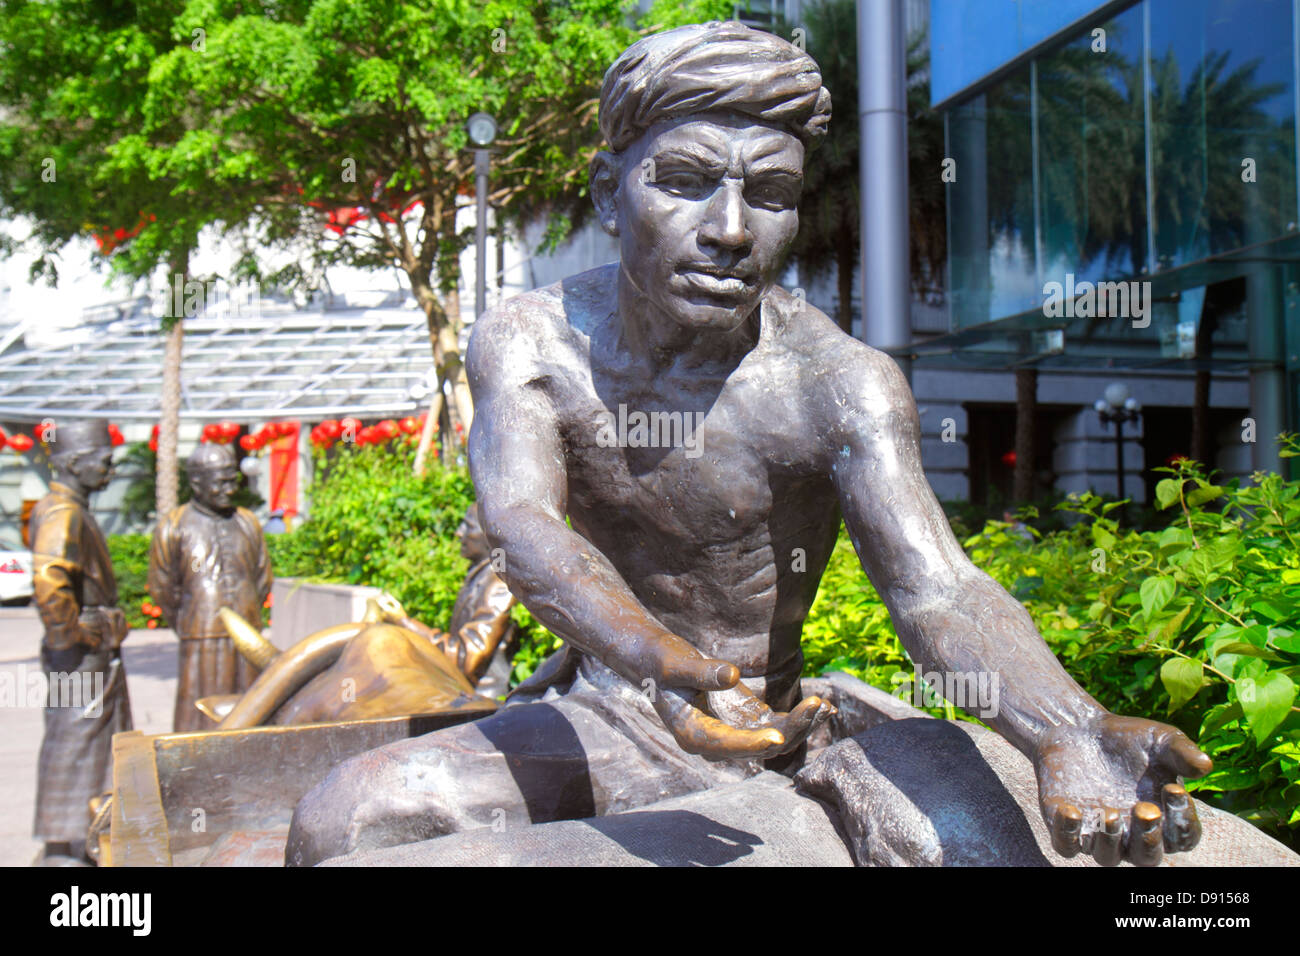 Singapore Singapore River, Boat Quay, grandeur nature, statue de bronze, art public, homme asiatique hommes hommes, travailleur au quai, ouvriers, Sing1305559 Banque D'Images